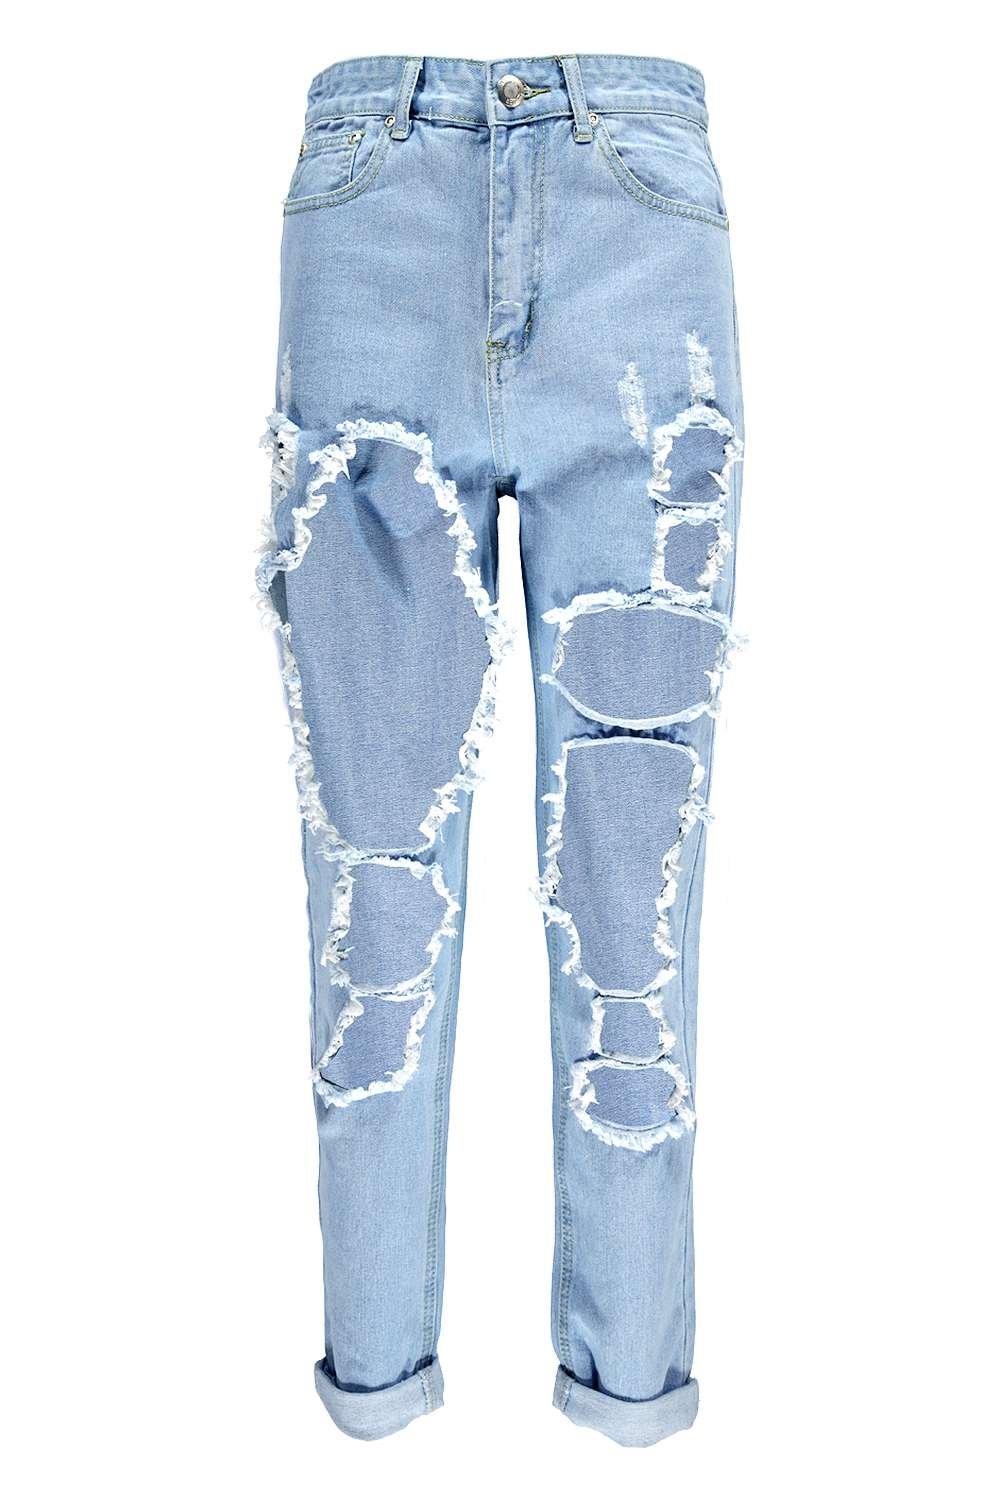 shredded mom jeans